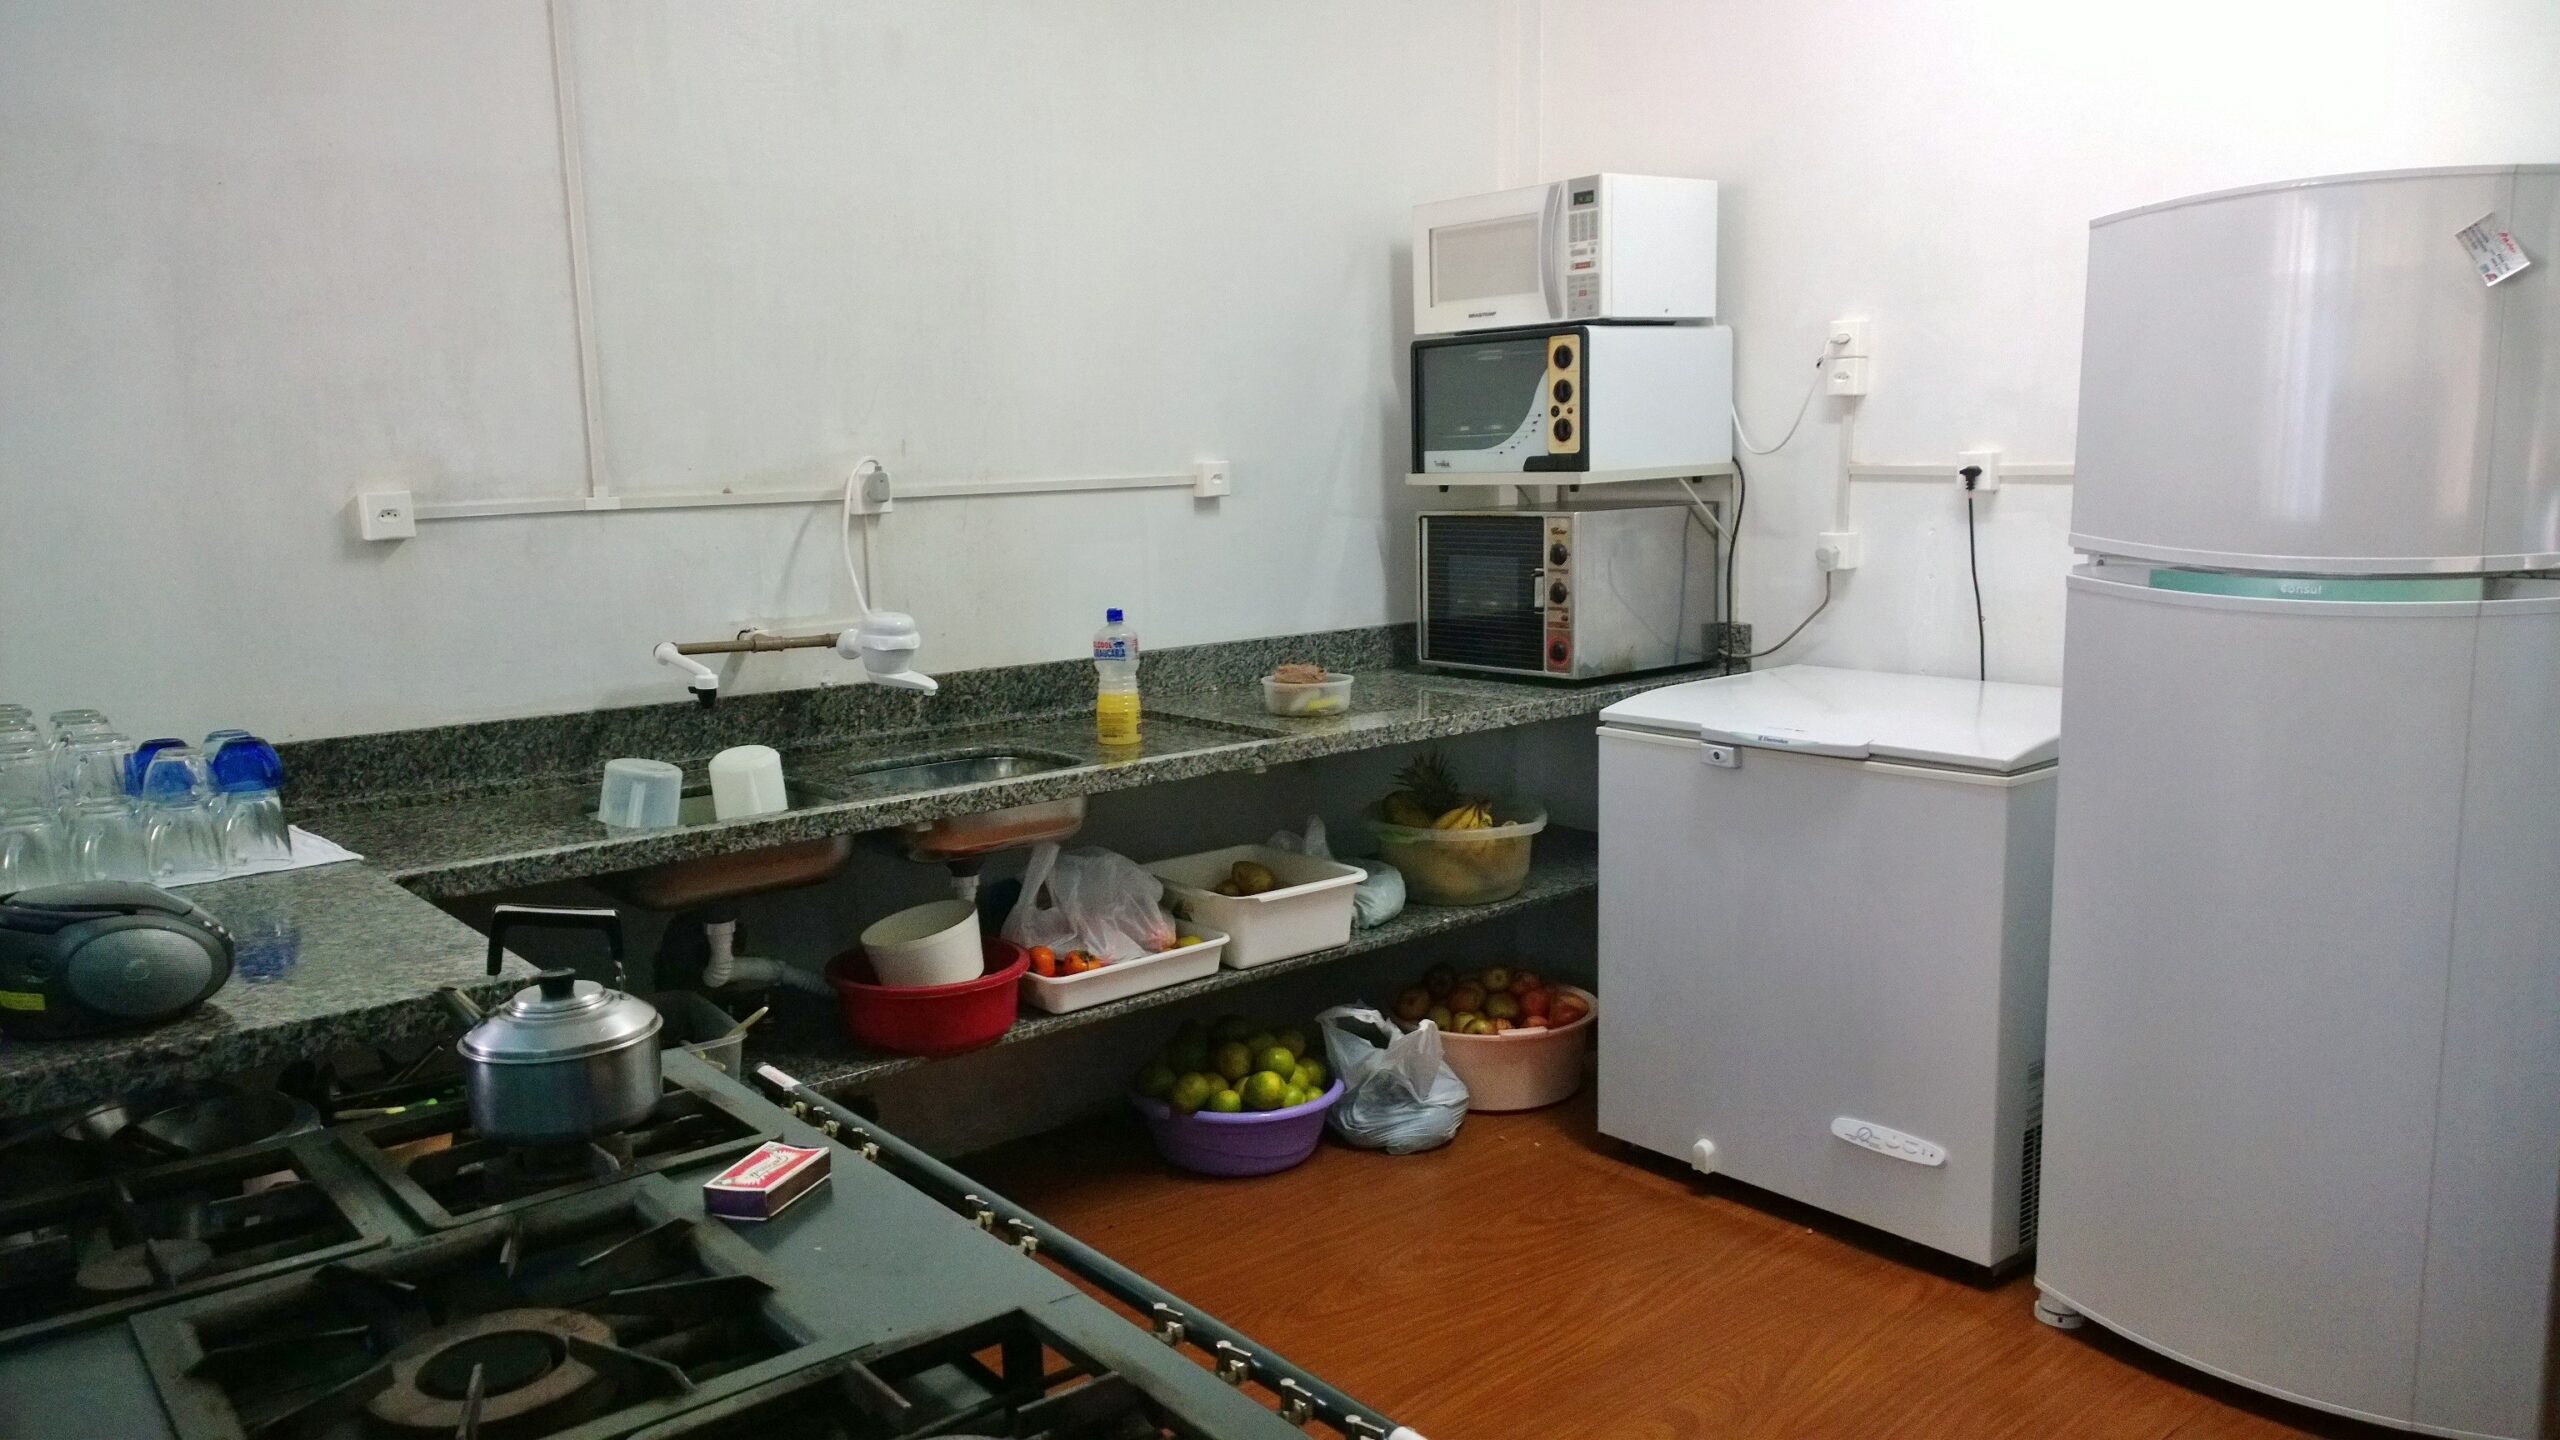 Cozinha do CEI Trenzinho Alegre recebeu melhorias, para torna-se um espaço mais funcional e atender ainda melhor as crianças que frequentam o educandário